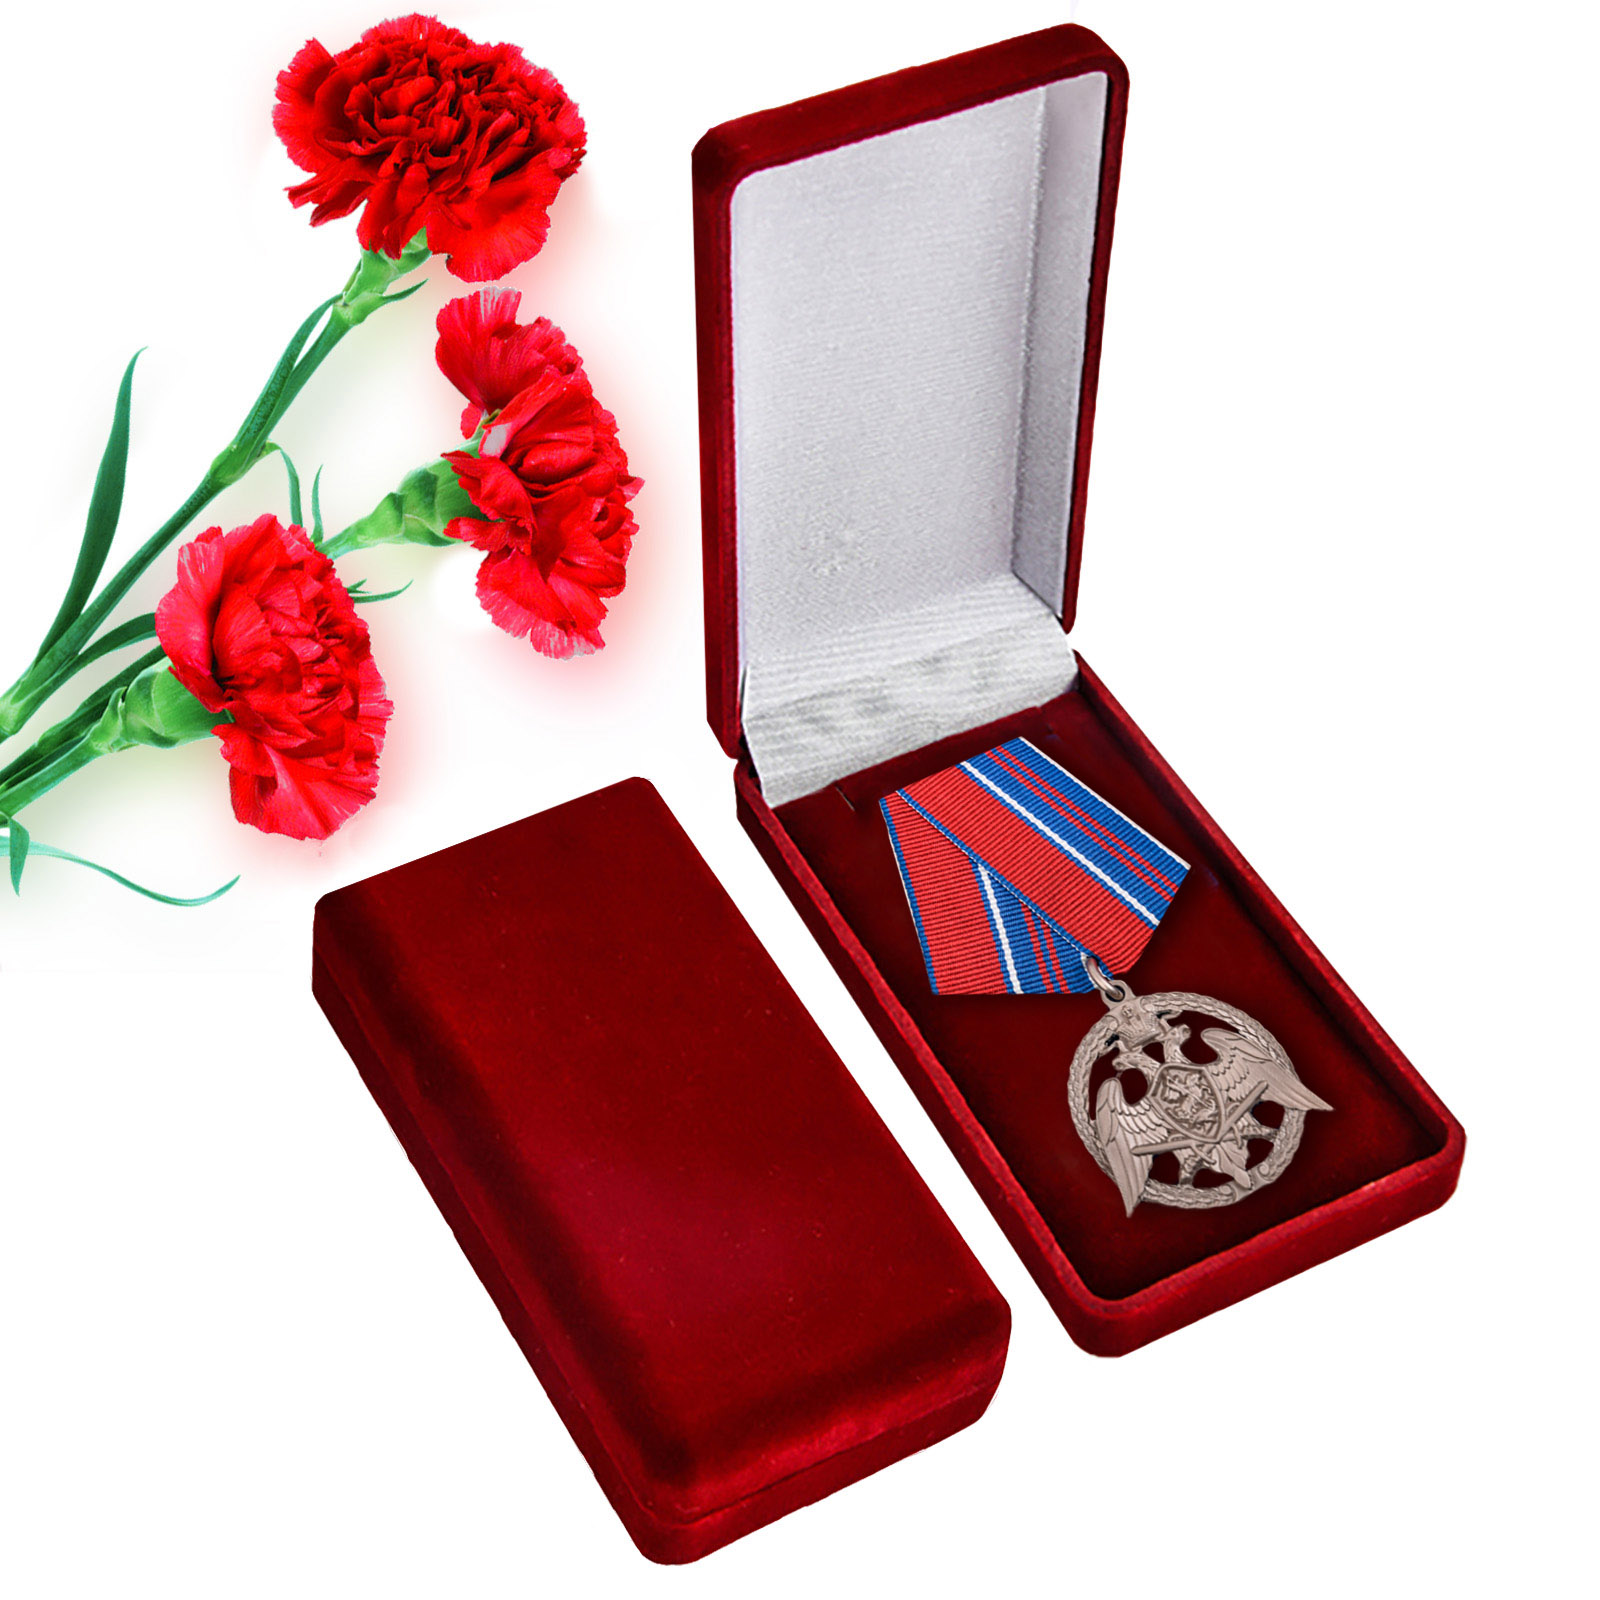 Медаль Росгвардии "За проявленную доблесть" 2-й степени